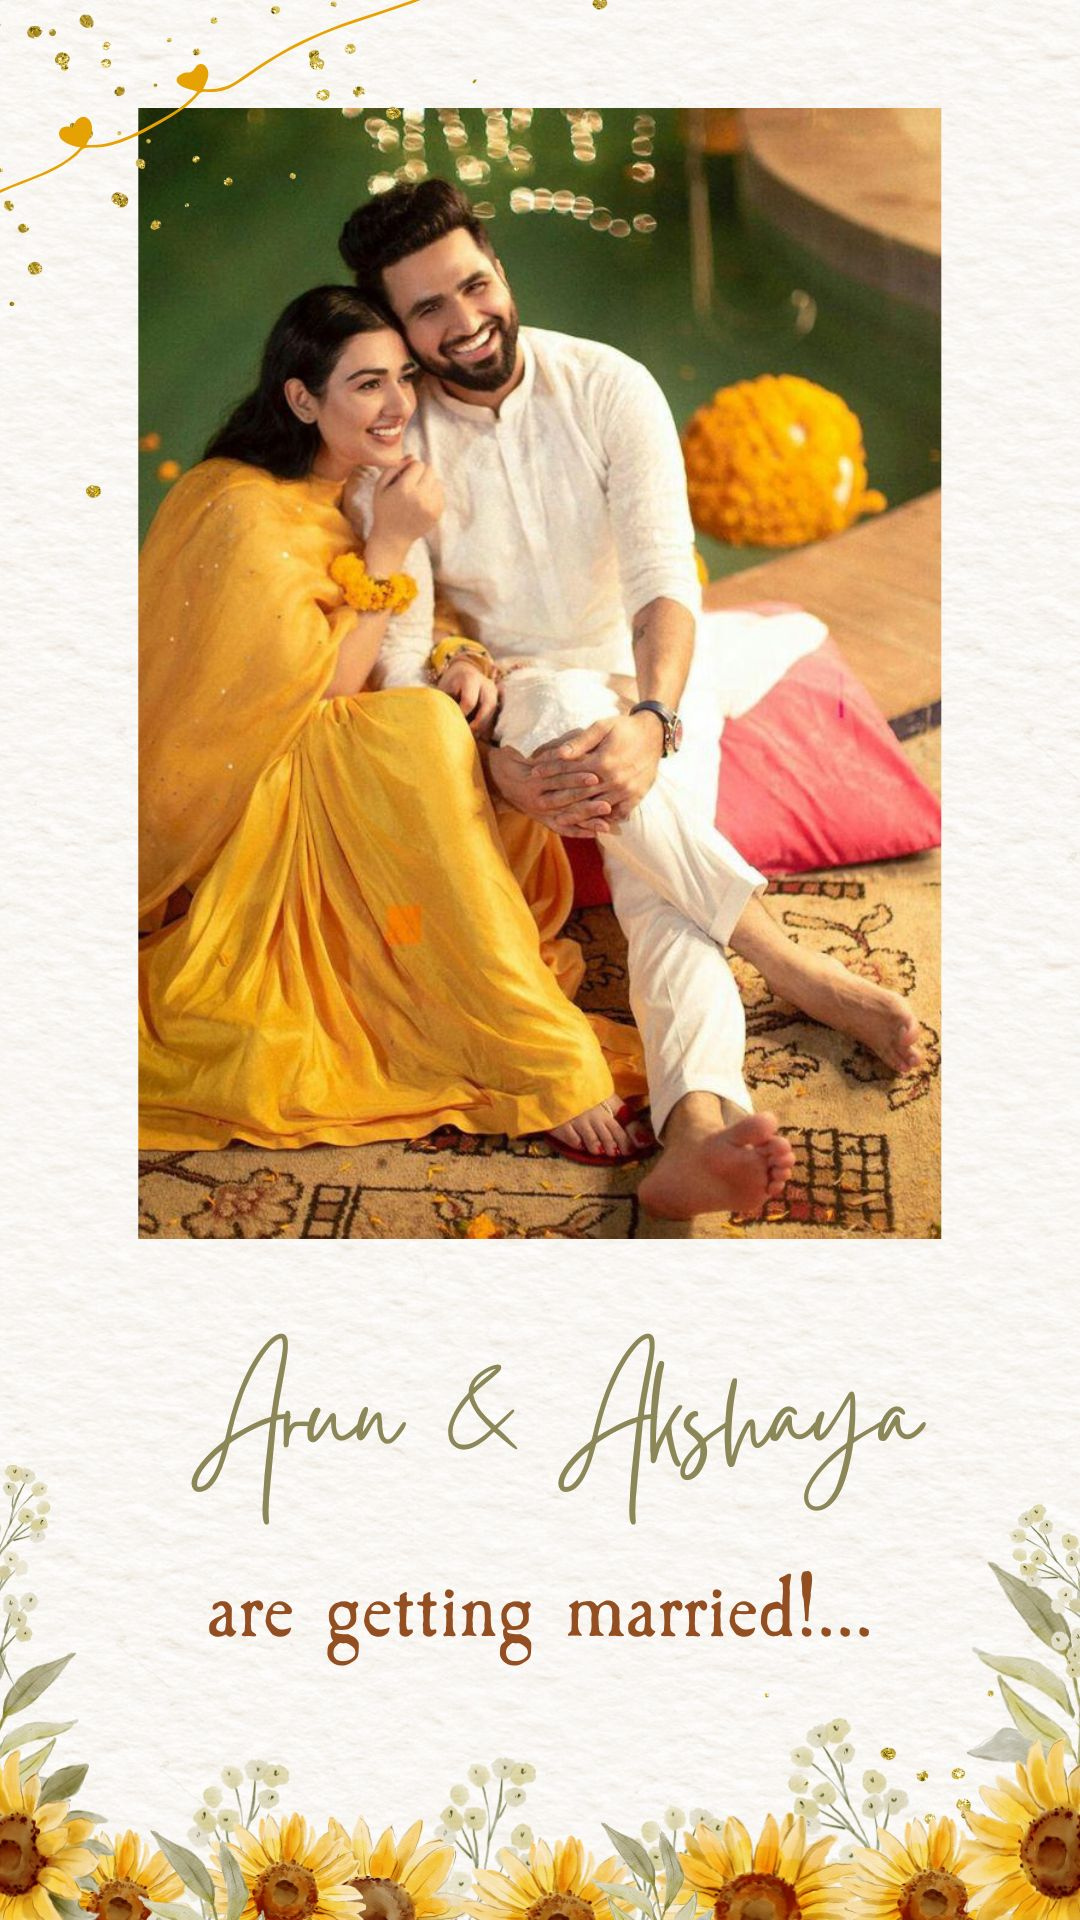 Invitación de boda de girasol indio - Invitación de boda digital con tema de girasol - Reserve la fecha